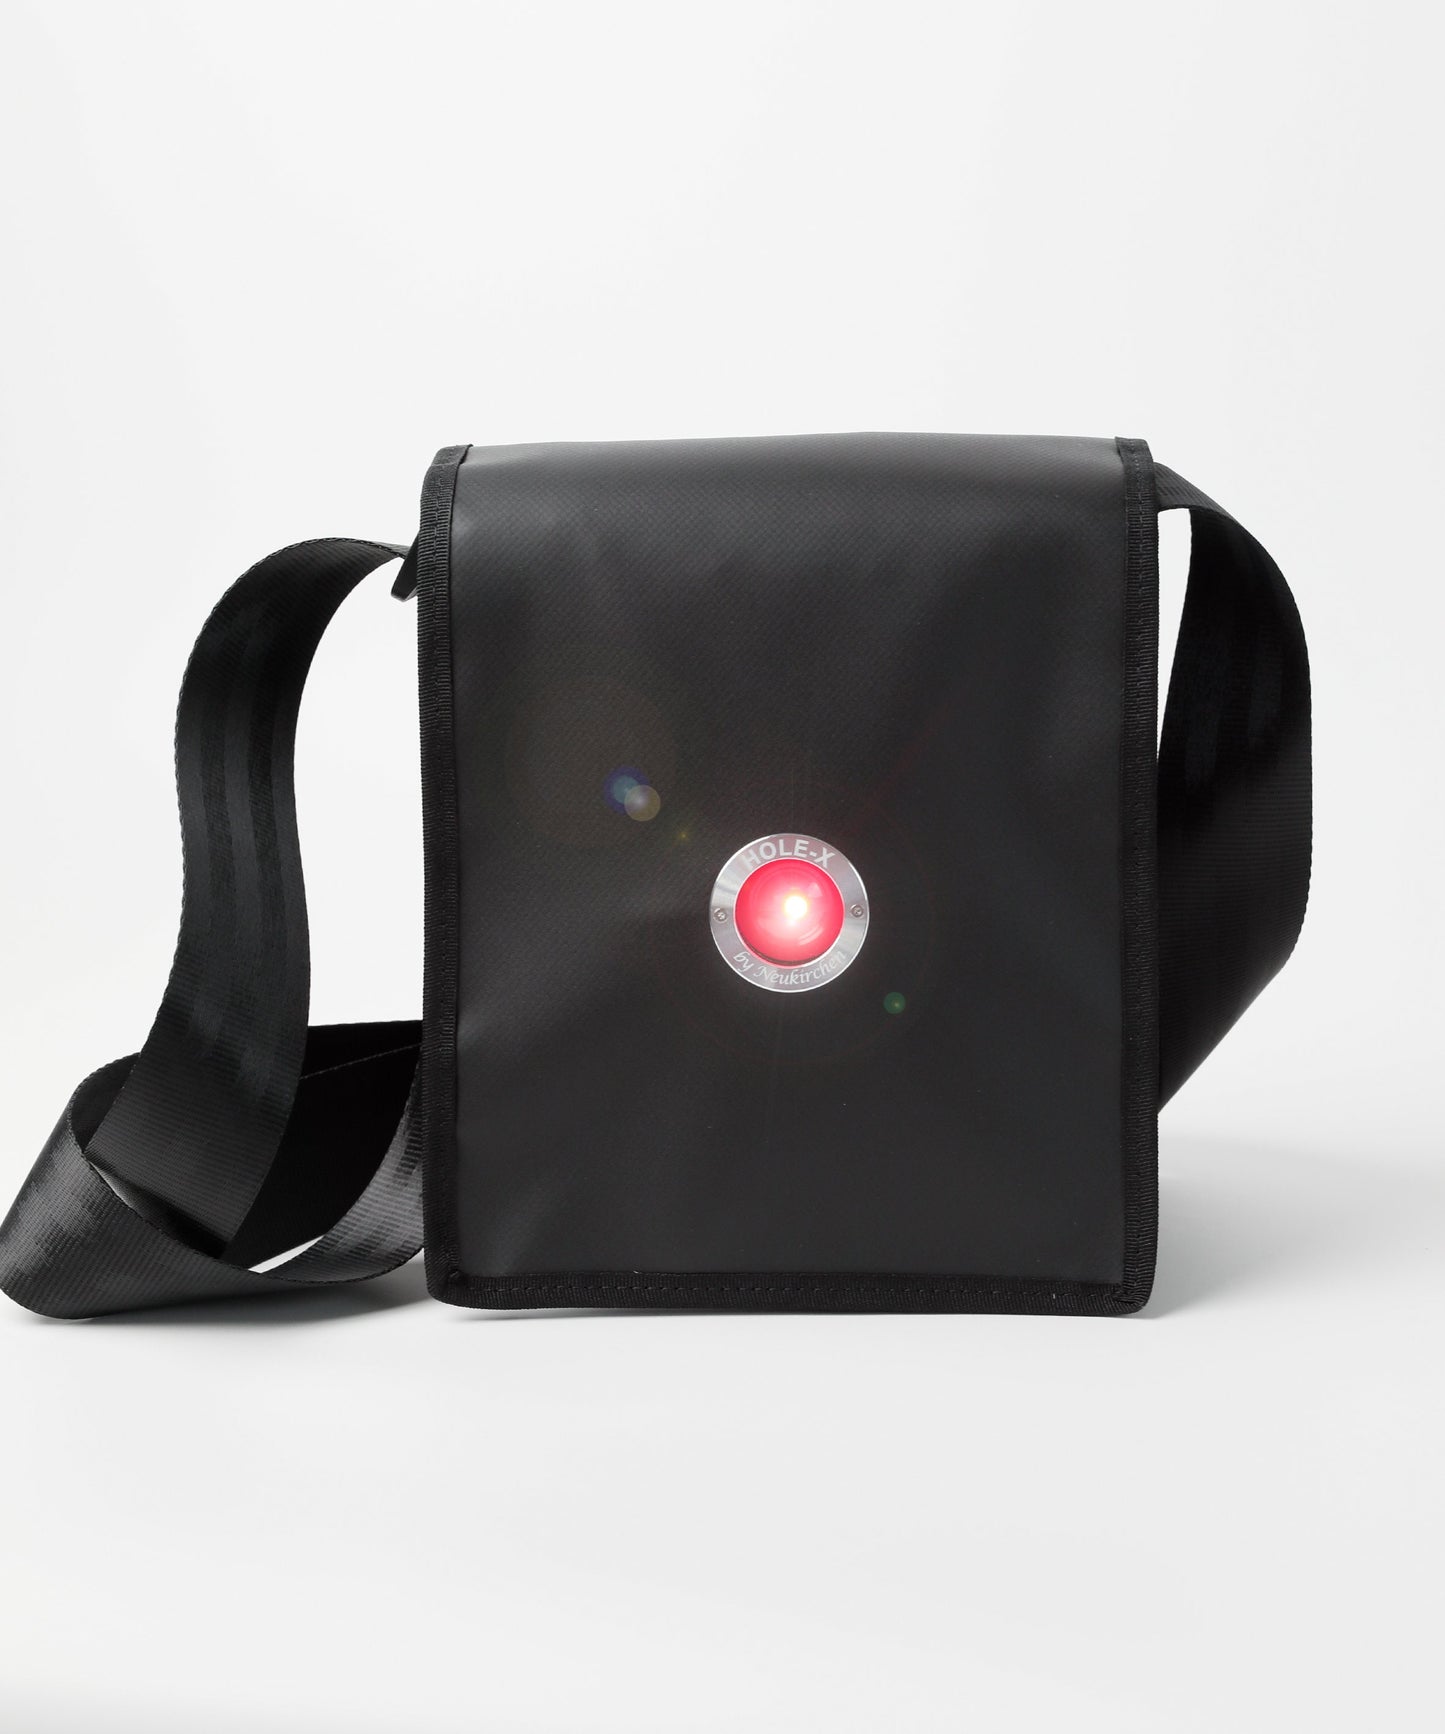 HOLE-X BRAVO Umhängetasche LKW-Plane schwarz Bringe Deine Tasche zum Leuchten Neuheit Tragetasche Bullauge Innovation 2020